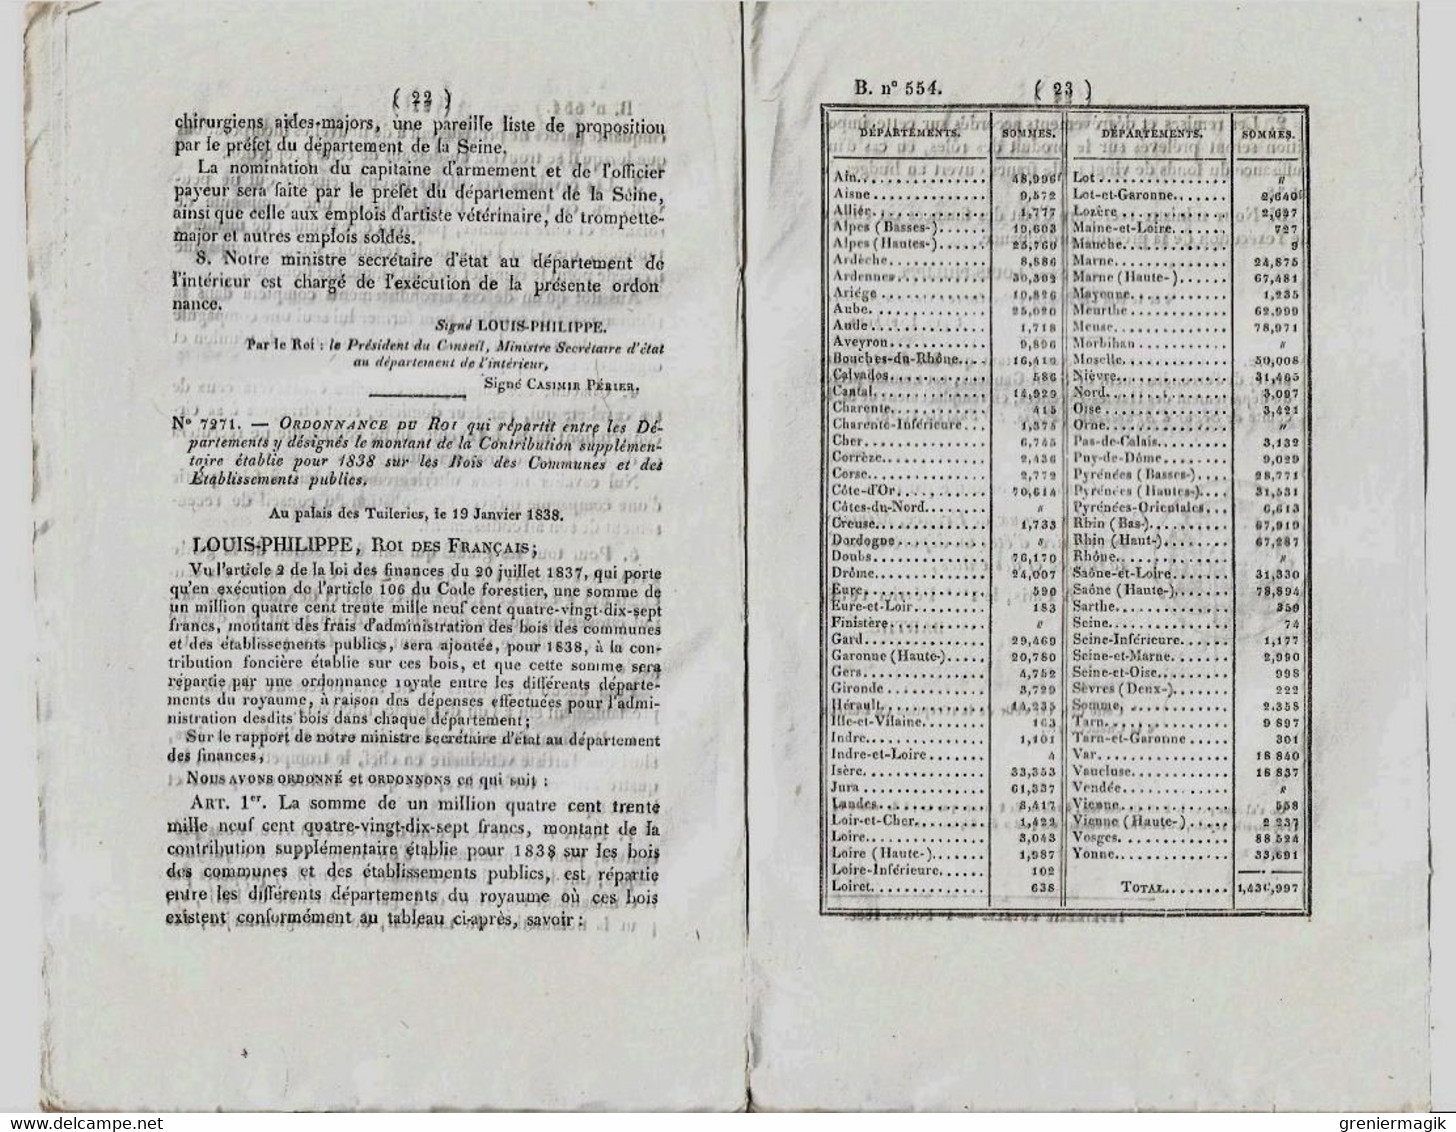 Bulletin des lois n°554 1838 Organisation de la Légion de cavalerie de la Garde nationale de Paris/Garde à cheval...